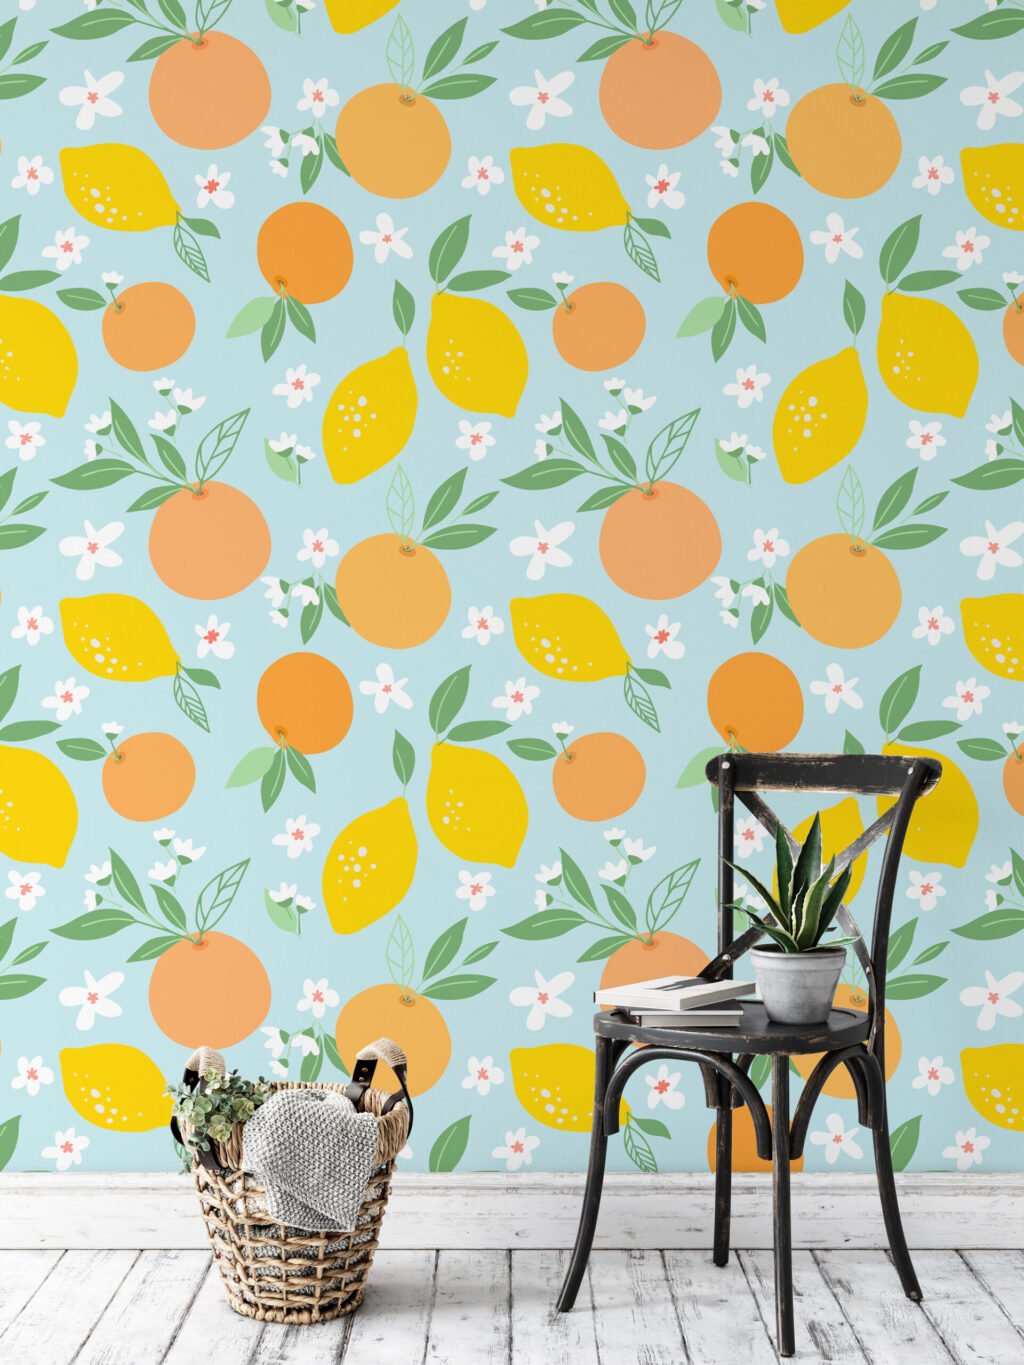 Portakallar ve Limonlar Duvar Kağıdı, Narenciye Çiçekleri 3D Duvar Kağıdı Yiyecek & İçecek Duvar Kağıtları 4